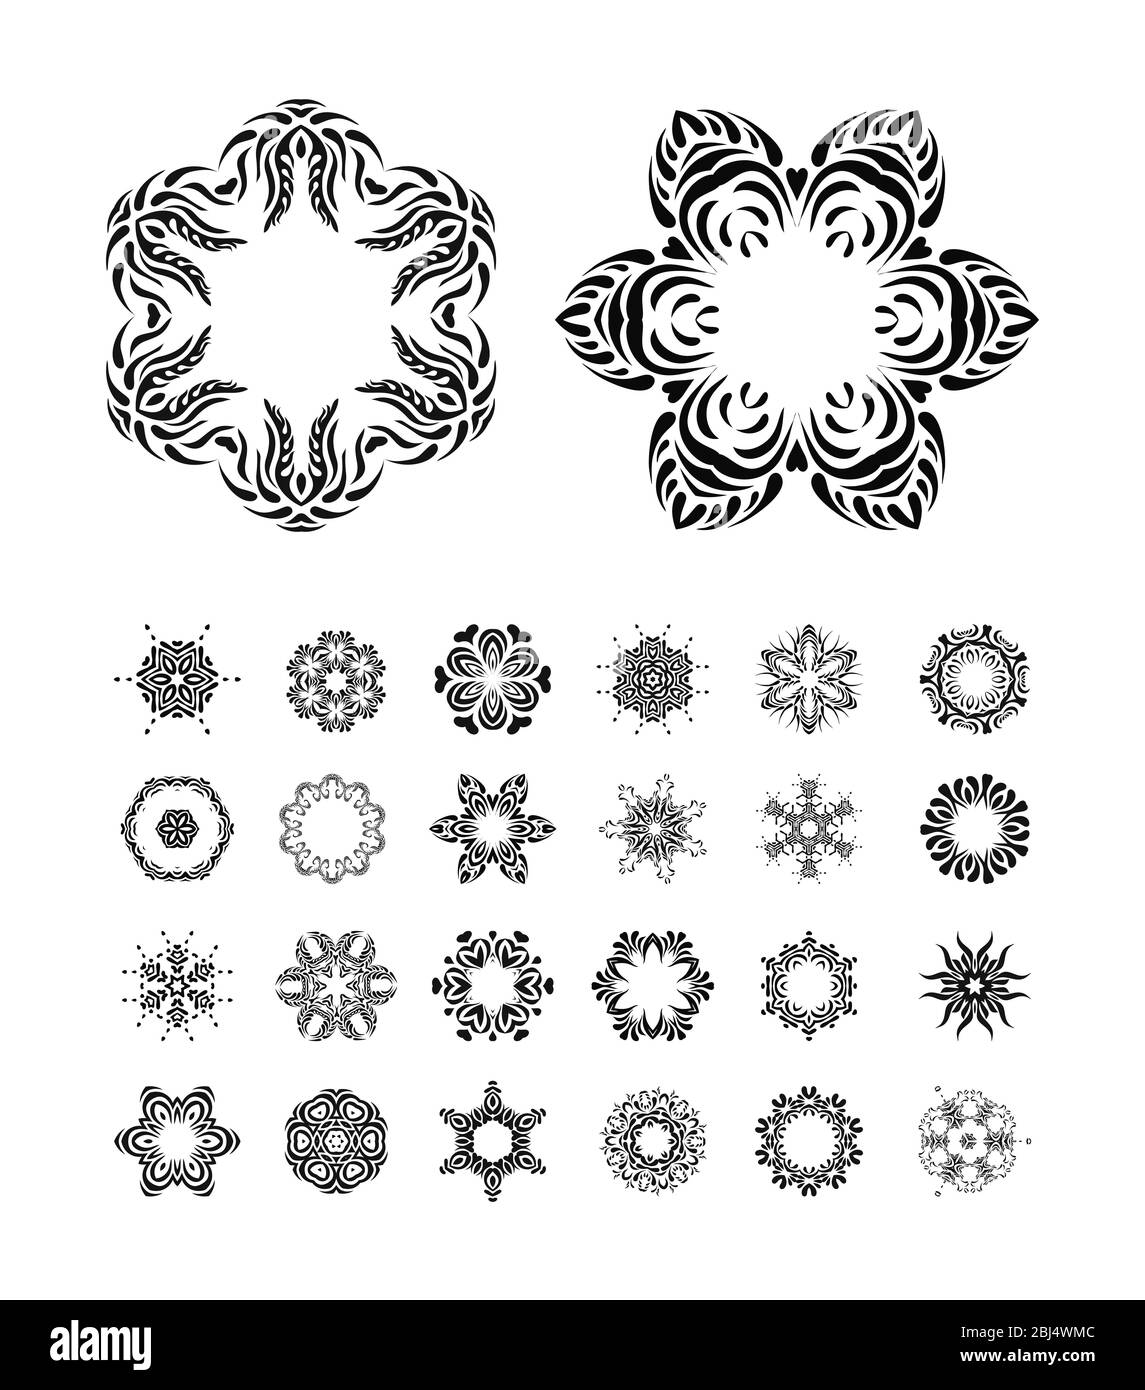 Mandala. Round ornament pattern set. Stock Photo